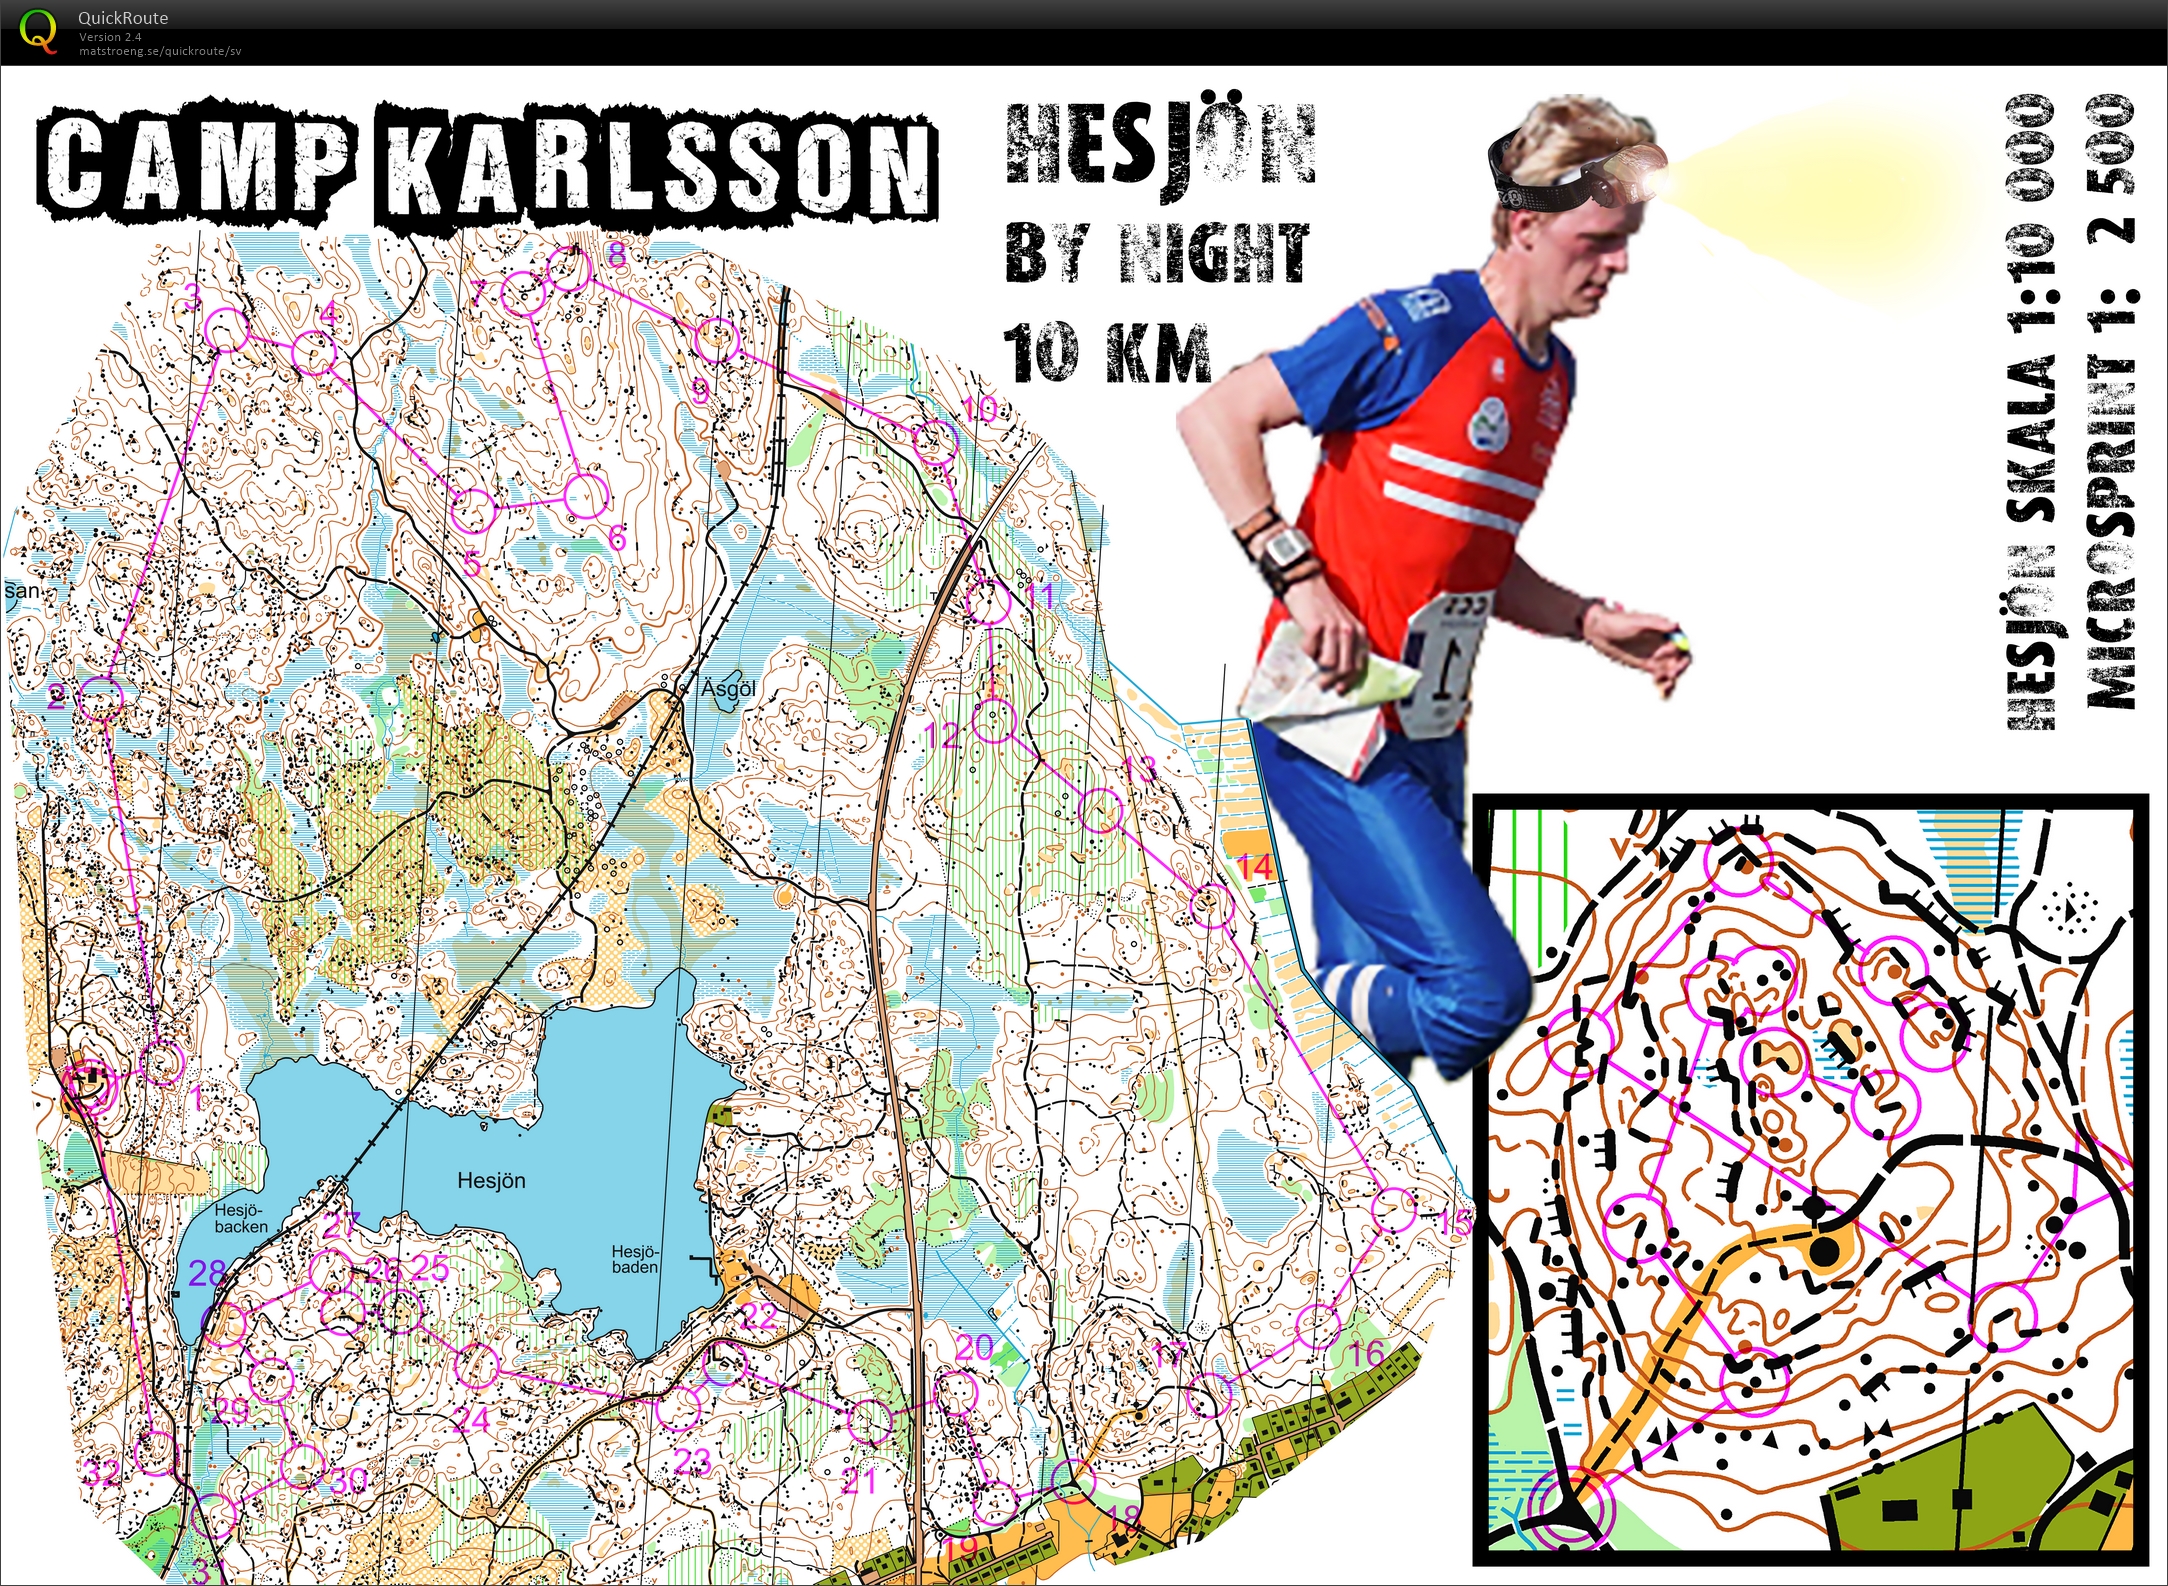 Camp Karlsson #2: Hesjön by Night (11.12.2015)